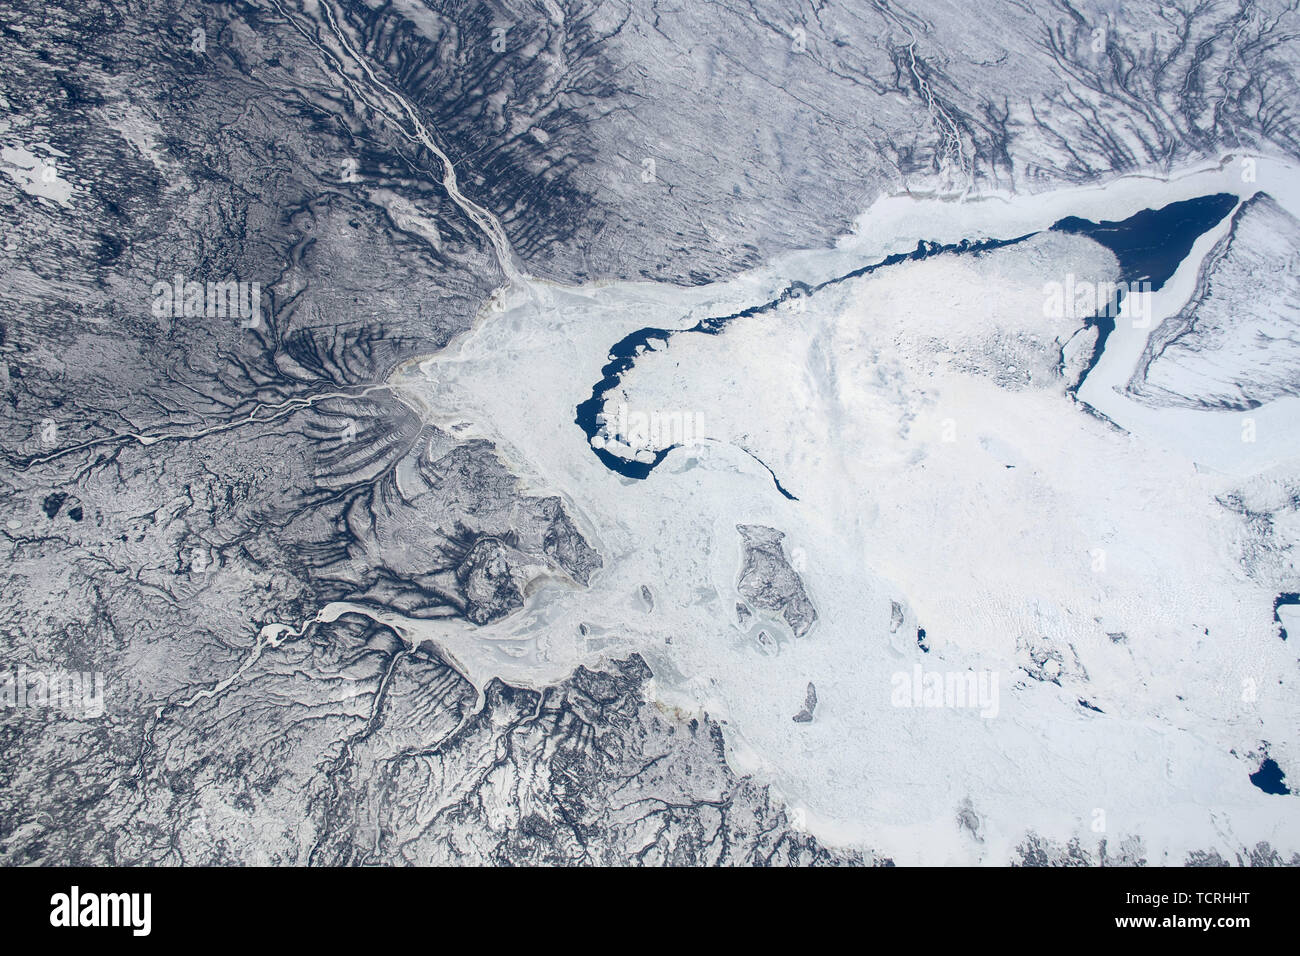 Bahía de Hudson congelado del extremo sur, que se encuentra entre Ontario y Quebec, Canadá, visto desde la Estación Espacial Internacional Foto de stock